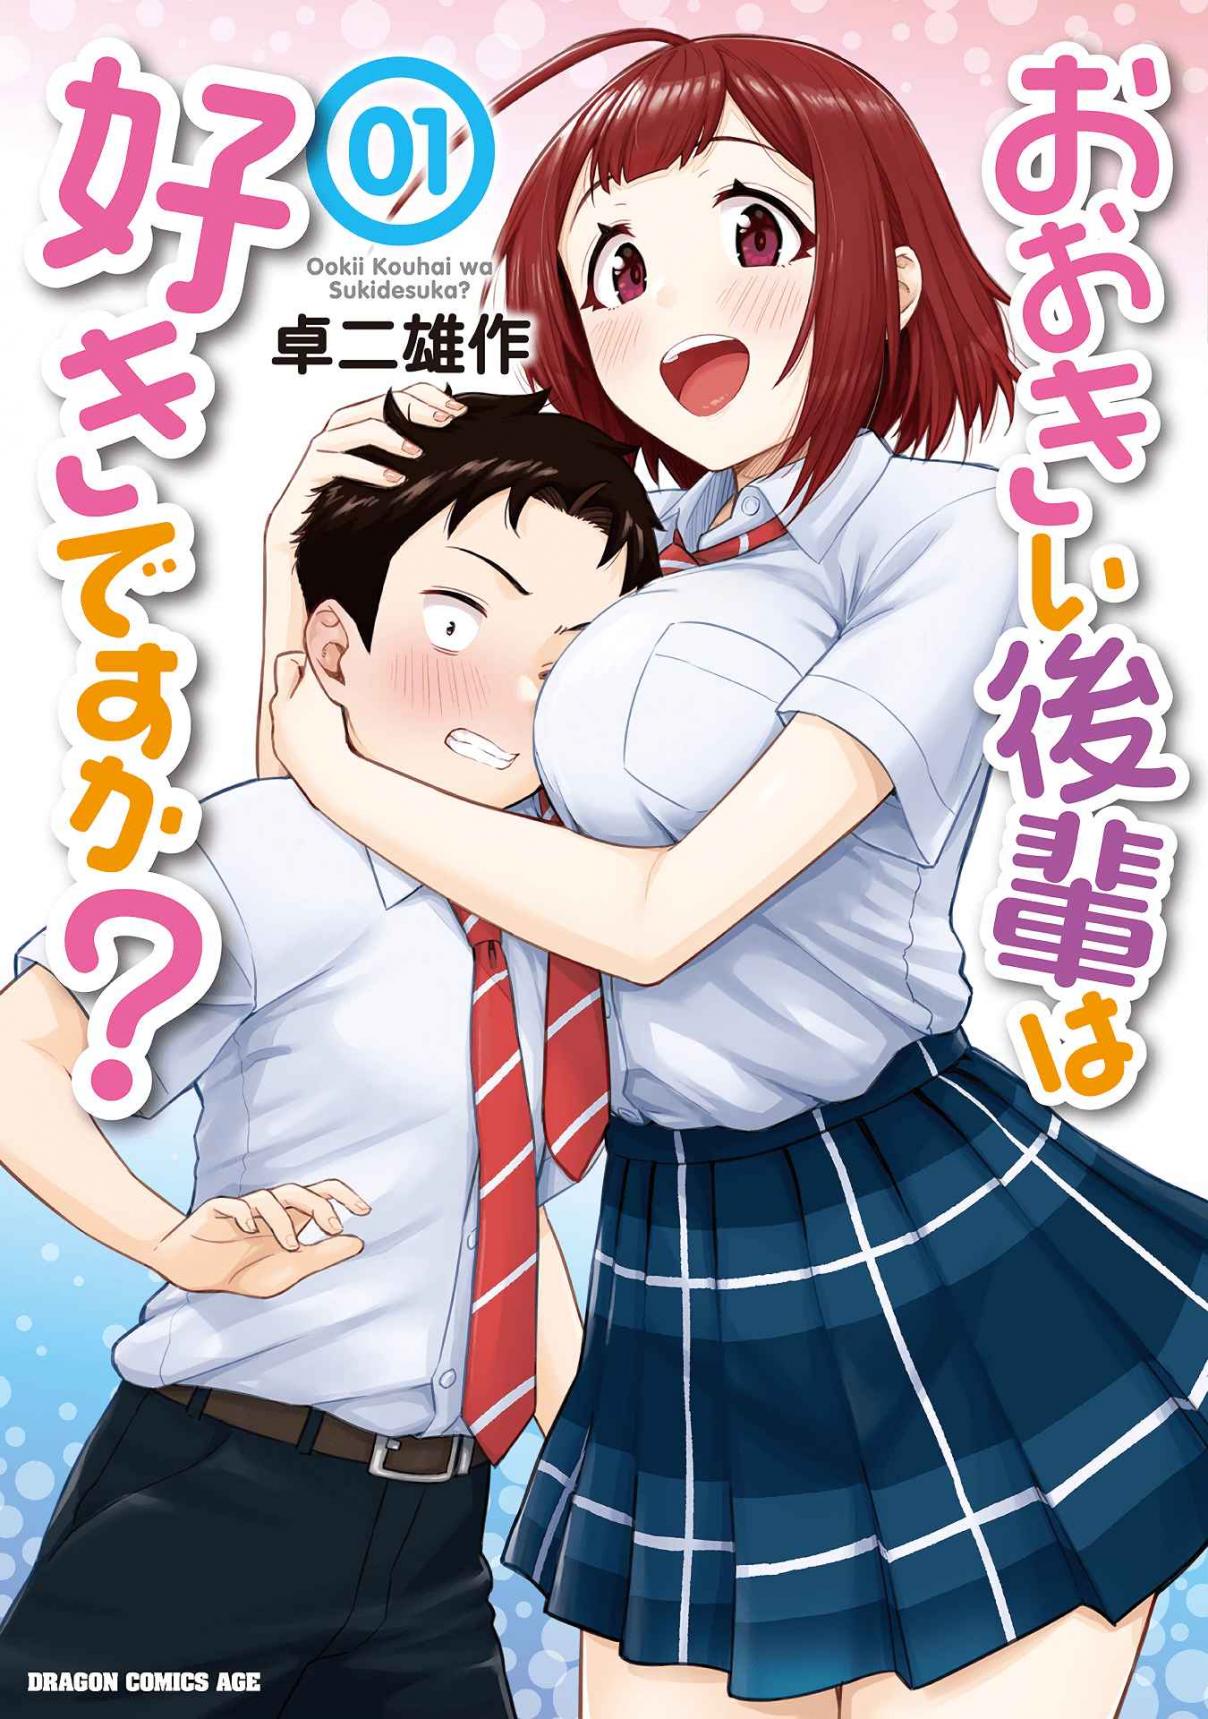 Ookii Kouhai wa Suki Desu ka? Vol. 1 Ch. 15.5 Volume 1 Extras